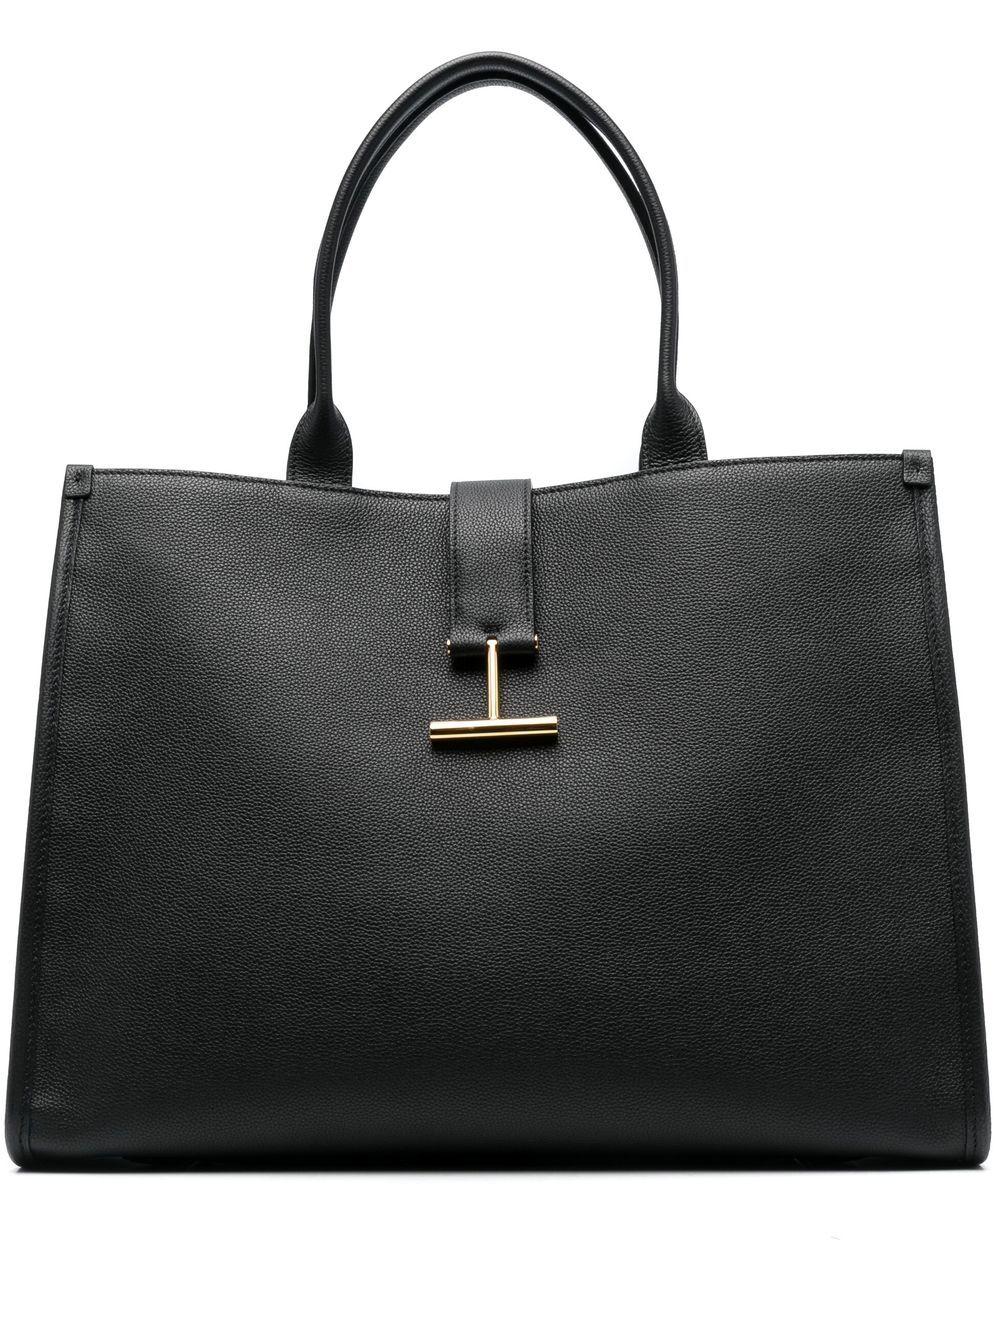 Tom Ford Tara Leather Tote Bag in Black | Lyst